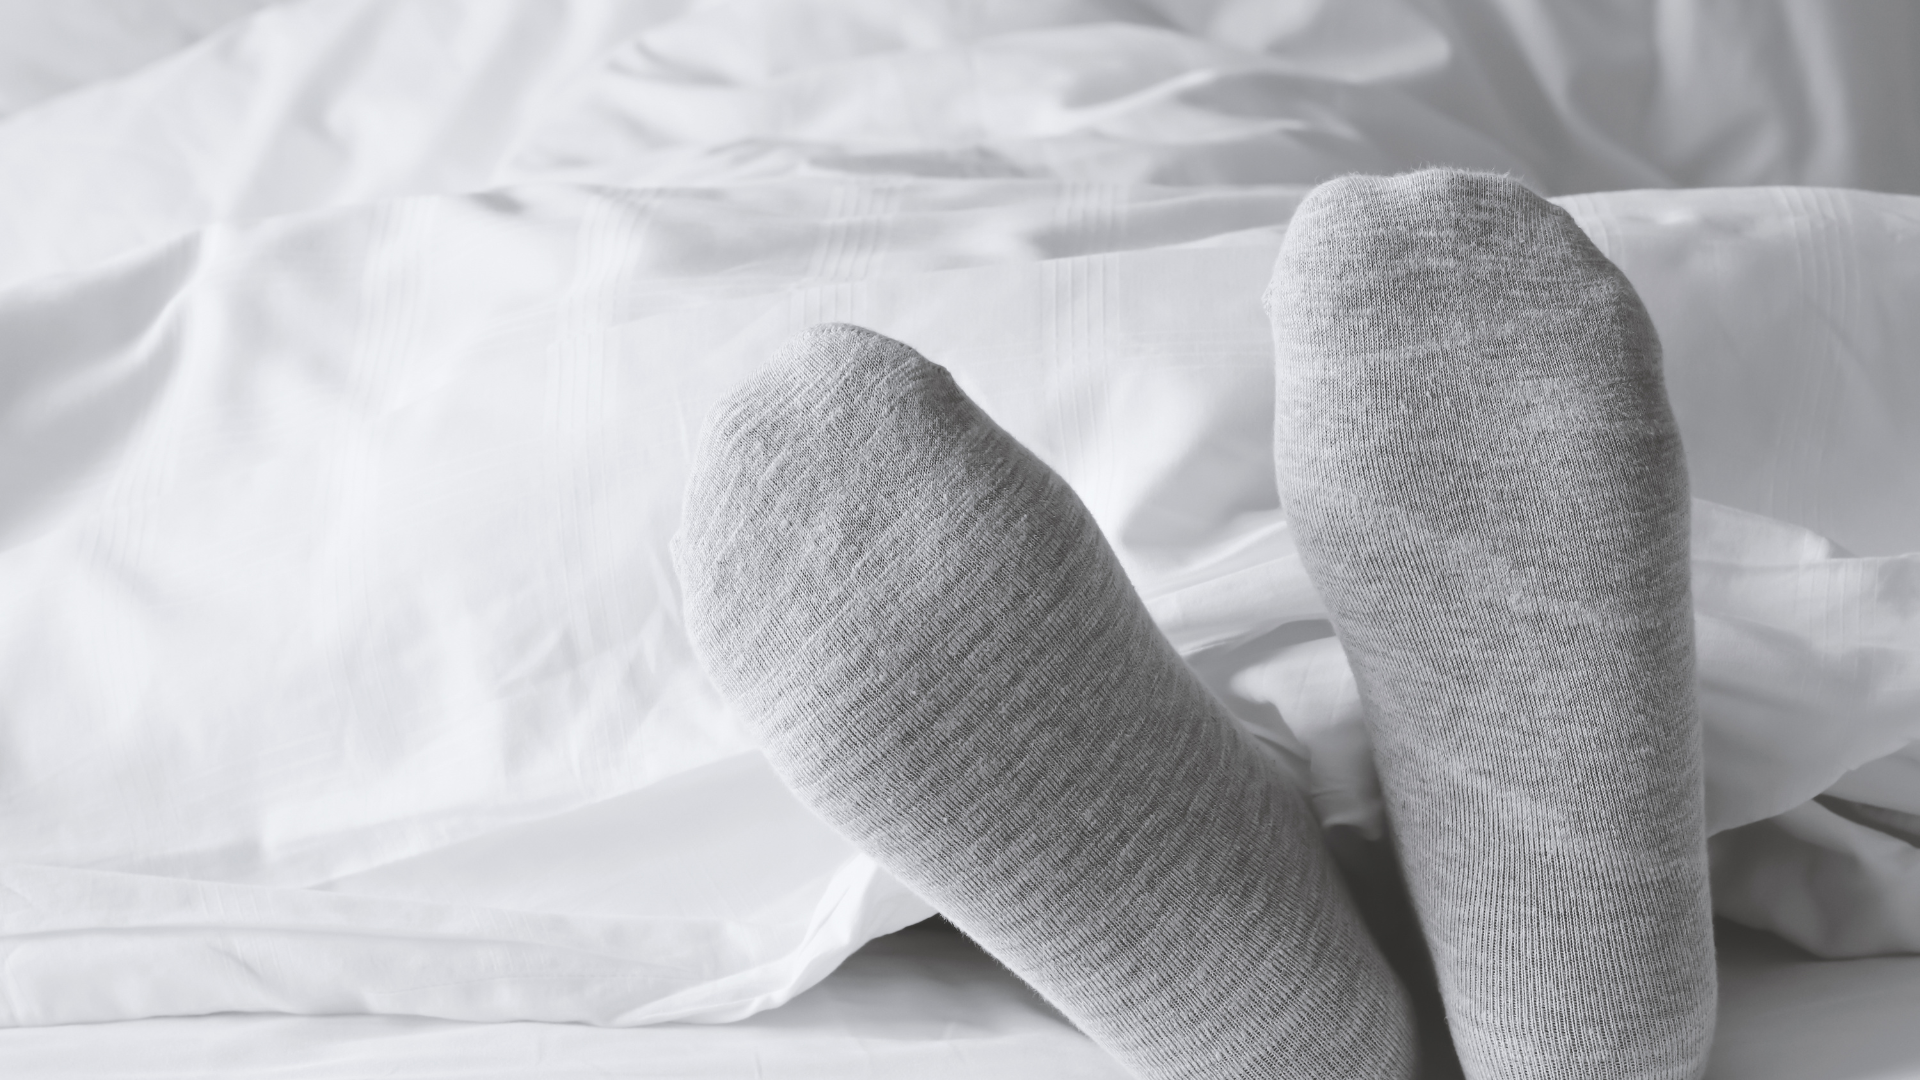 wearing socks in bedsheet